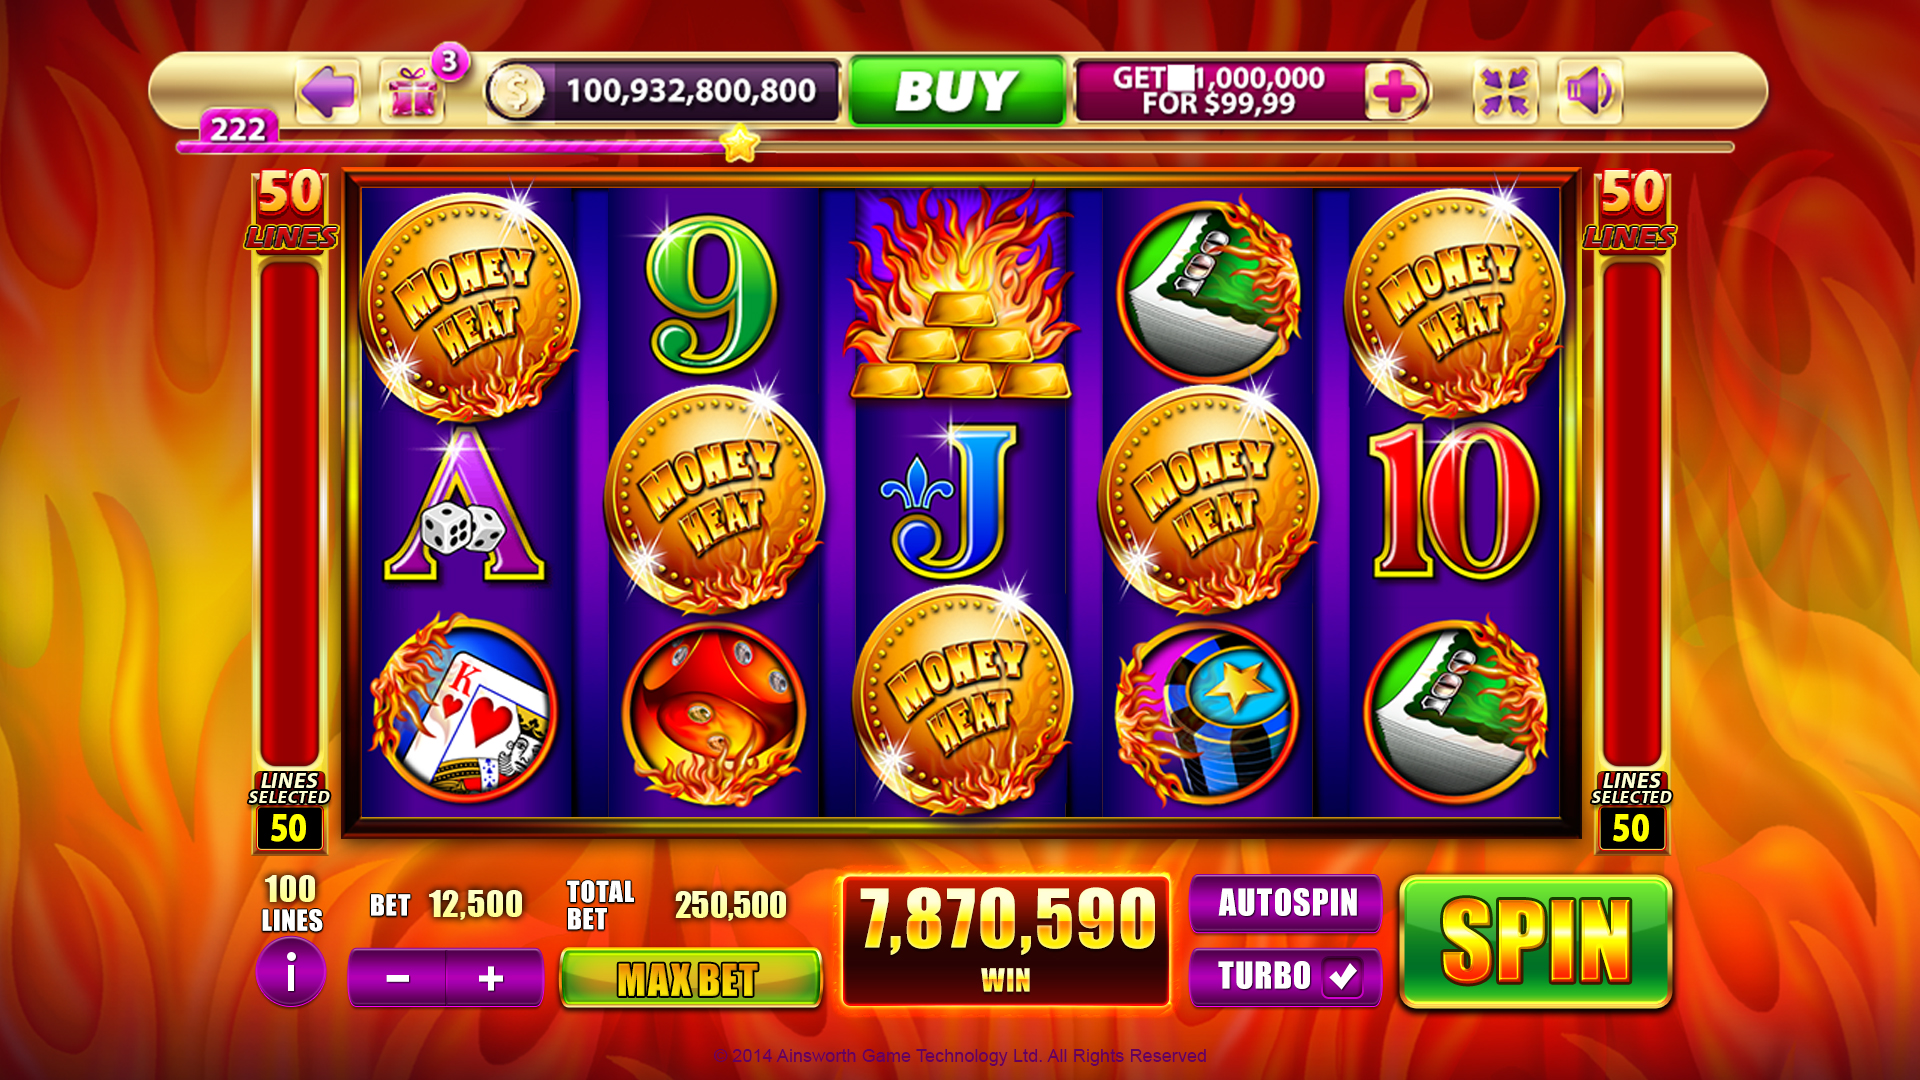 Top Free Mobile Slots Gambling